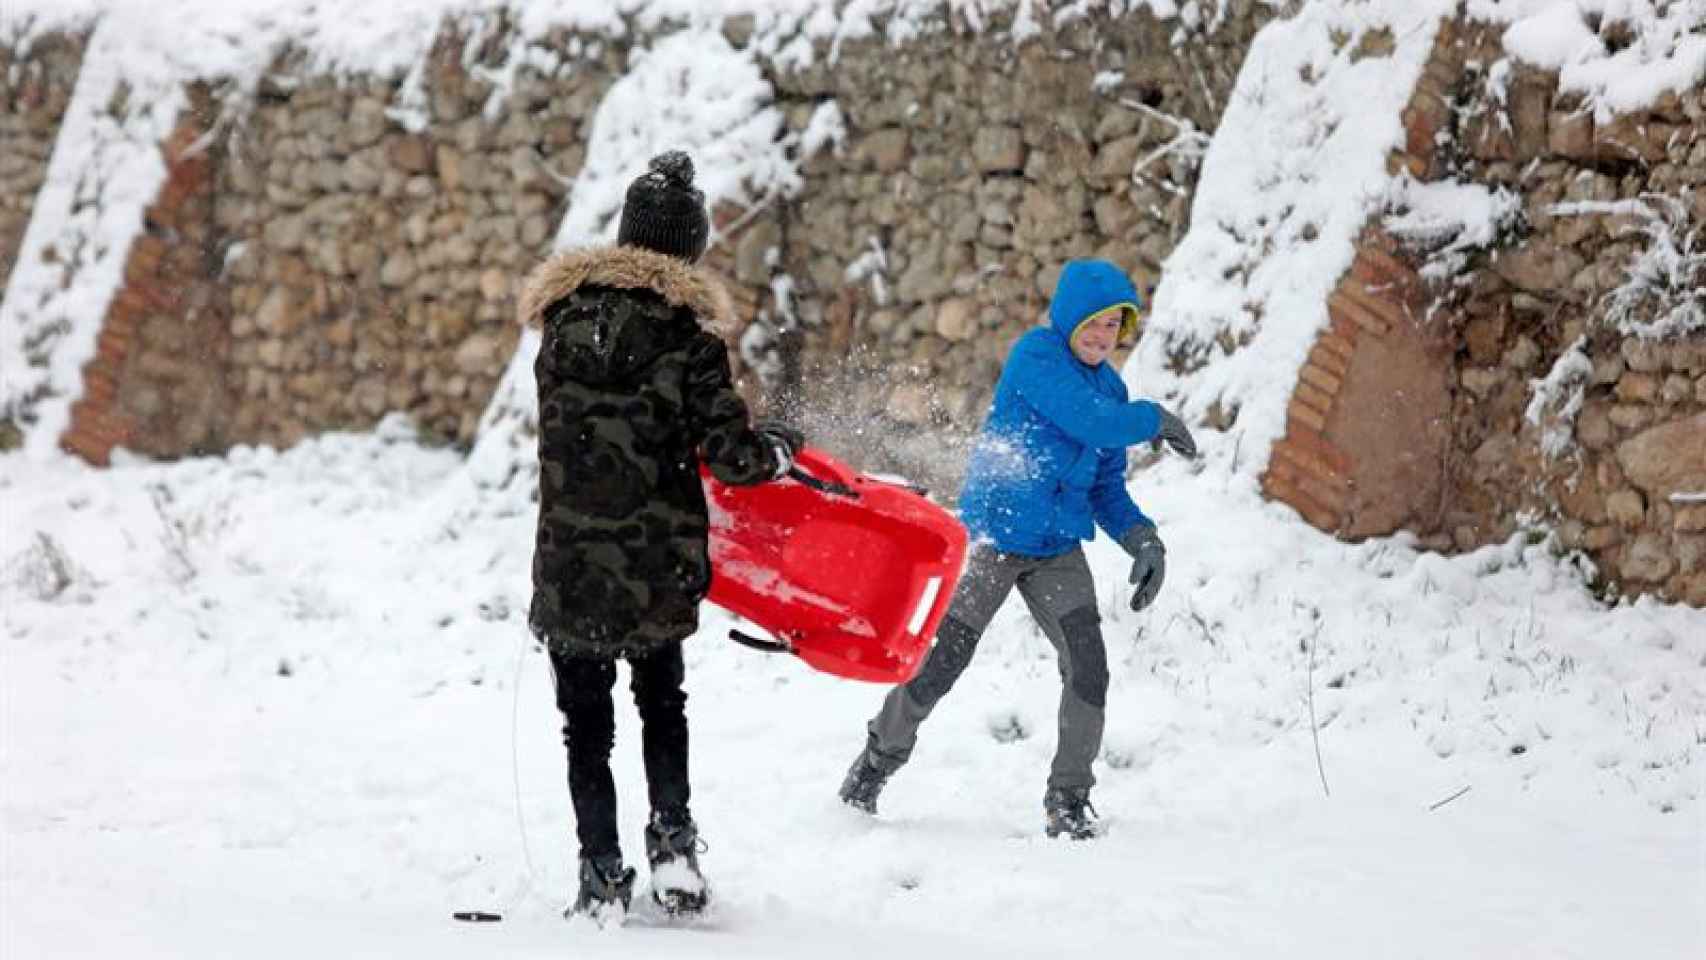 Dos escolares catalanes juegan en la nieve en una población de Cataluña / EFE